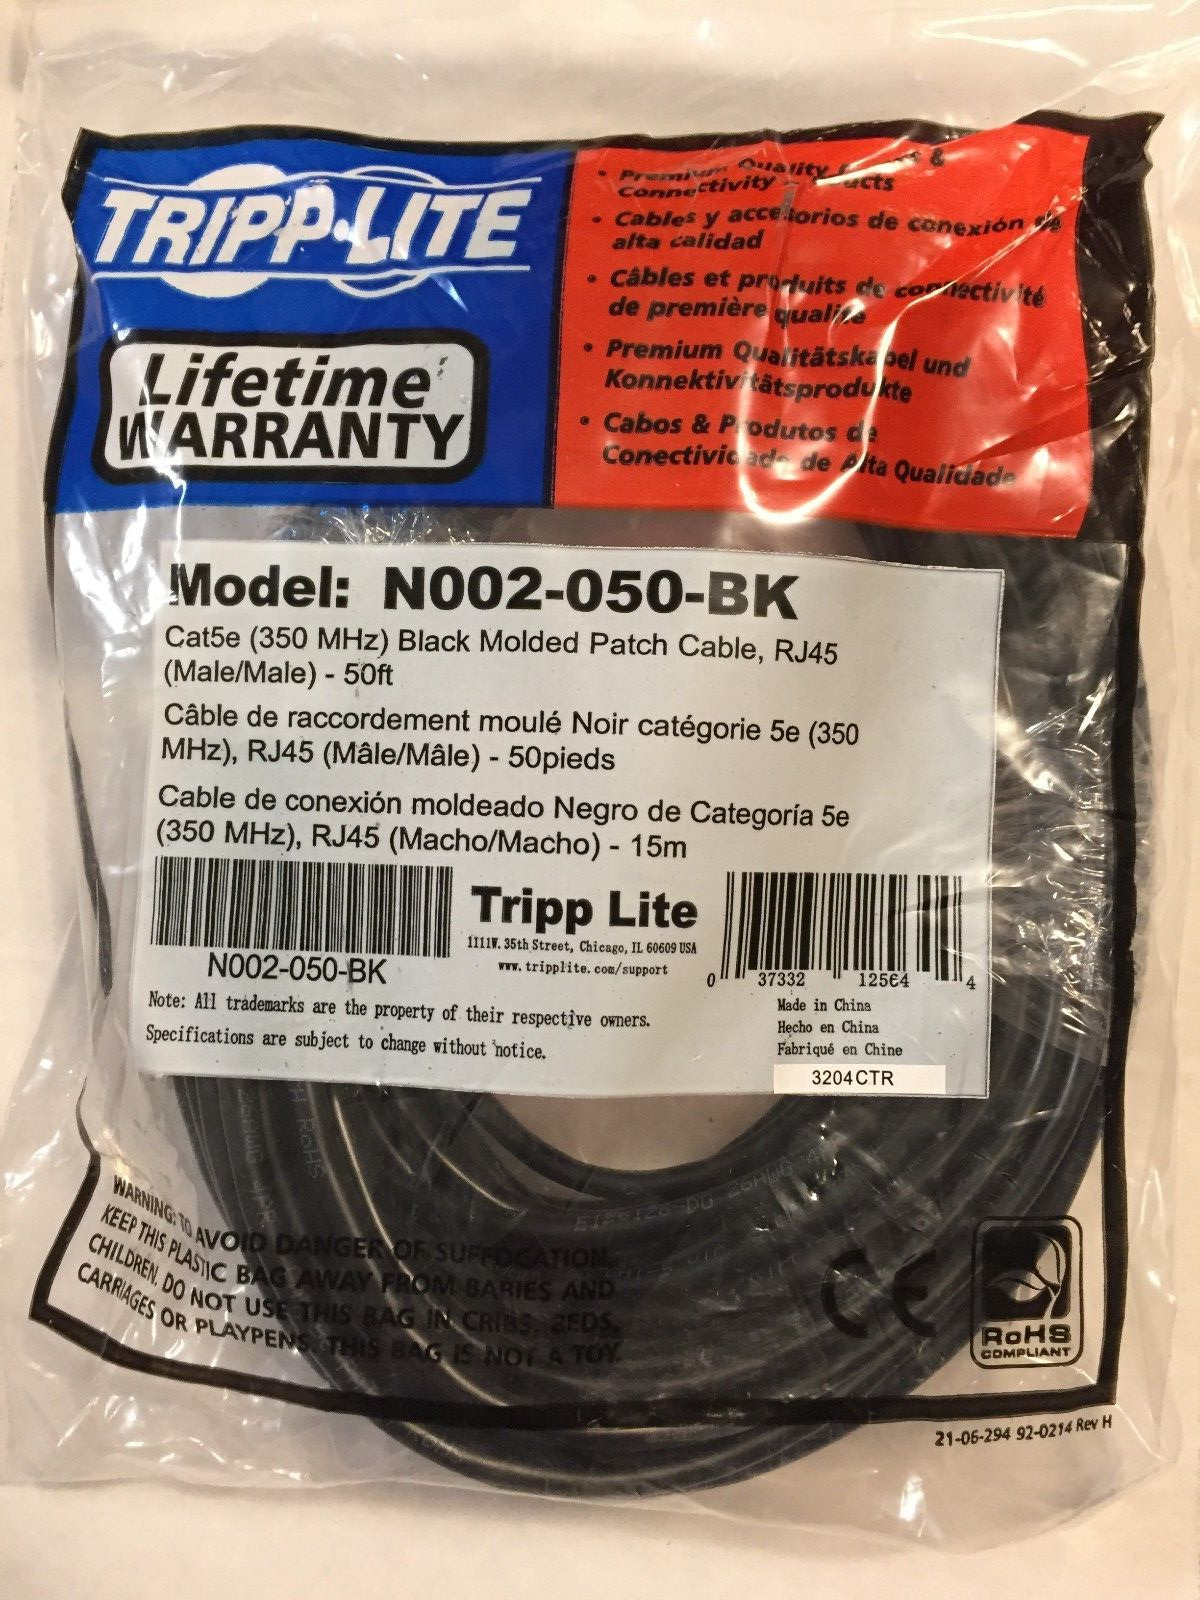 50 FT. ETHERNET CABLE - TRIPP-LITE Cat5e (350 MHz) Black Patch Cable, RJ45